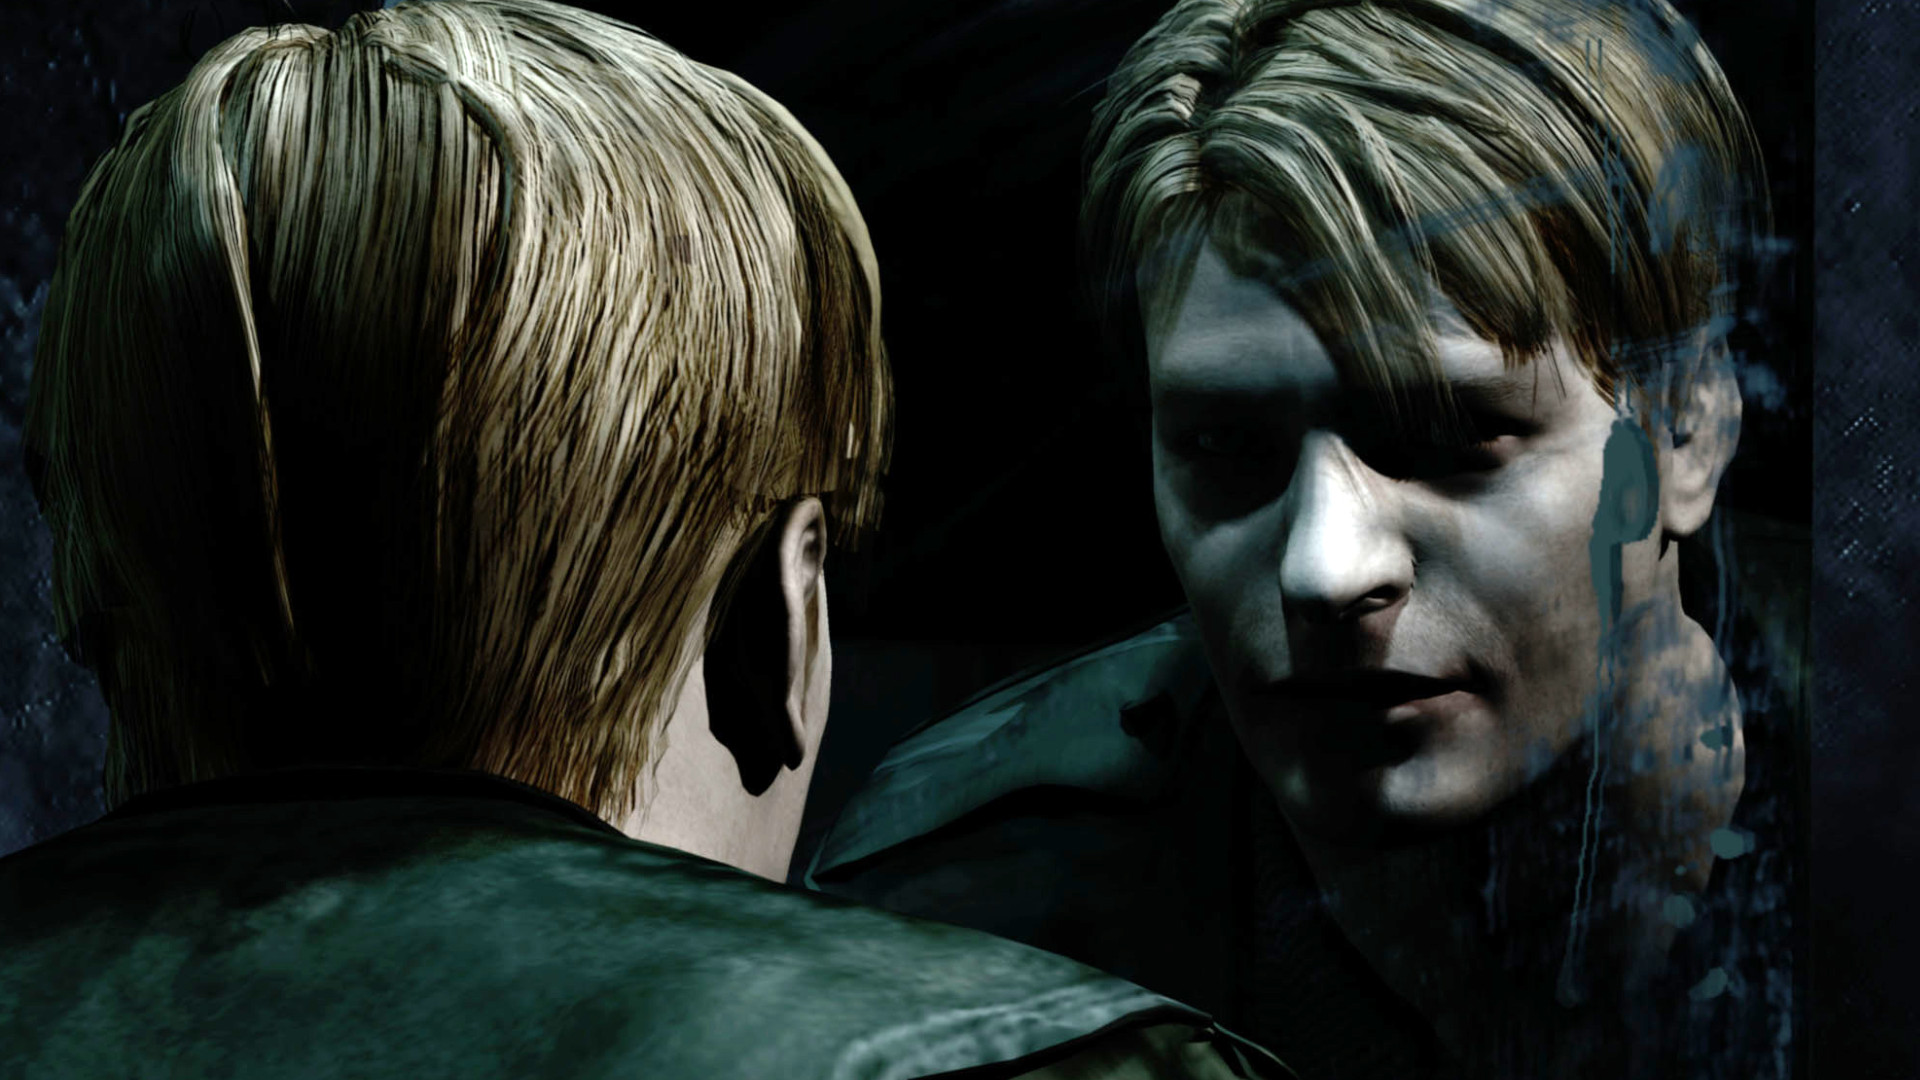 Resident Evil vs Silent Hill  - silent hill existential terror